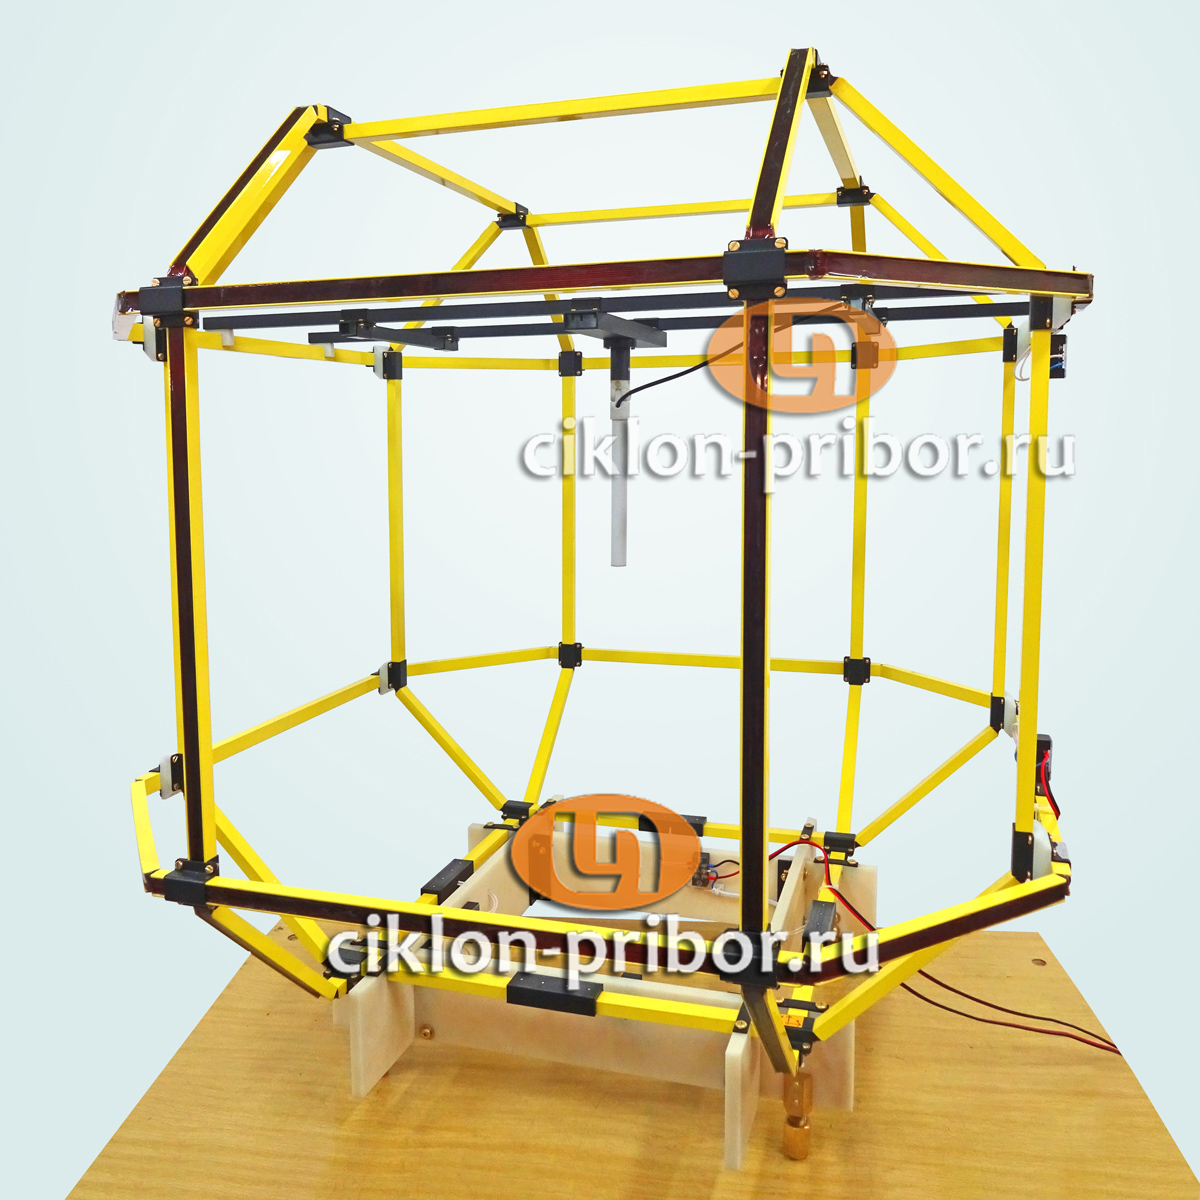 ЦИКЛОН HC-500-3D Для топливной системы